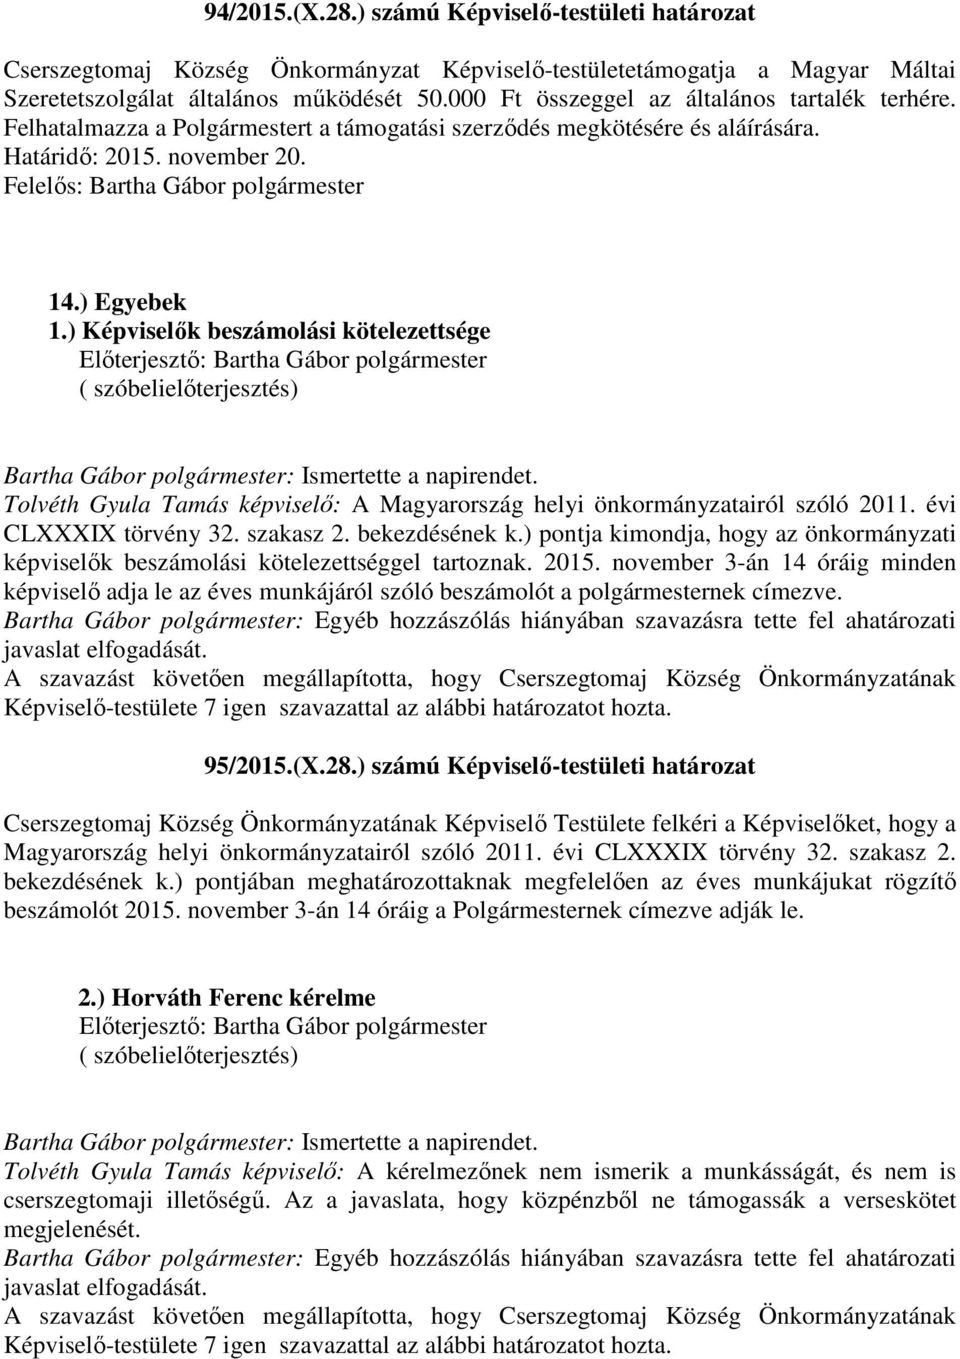 ) Képviselők beszámolási kötelezettsége ( szóbelielőterjesztés) Tolvéth Gyula Tamás képviselő: A Magyarország helyi önkormányzatairól szóló 2011. évi CLXXXIX törvény 32. szakasz 2. bekezdésének k.